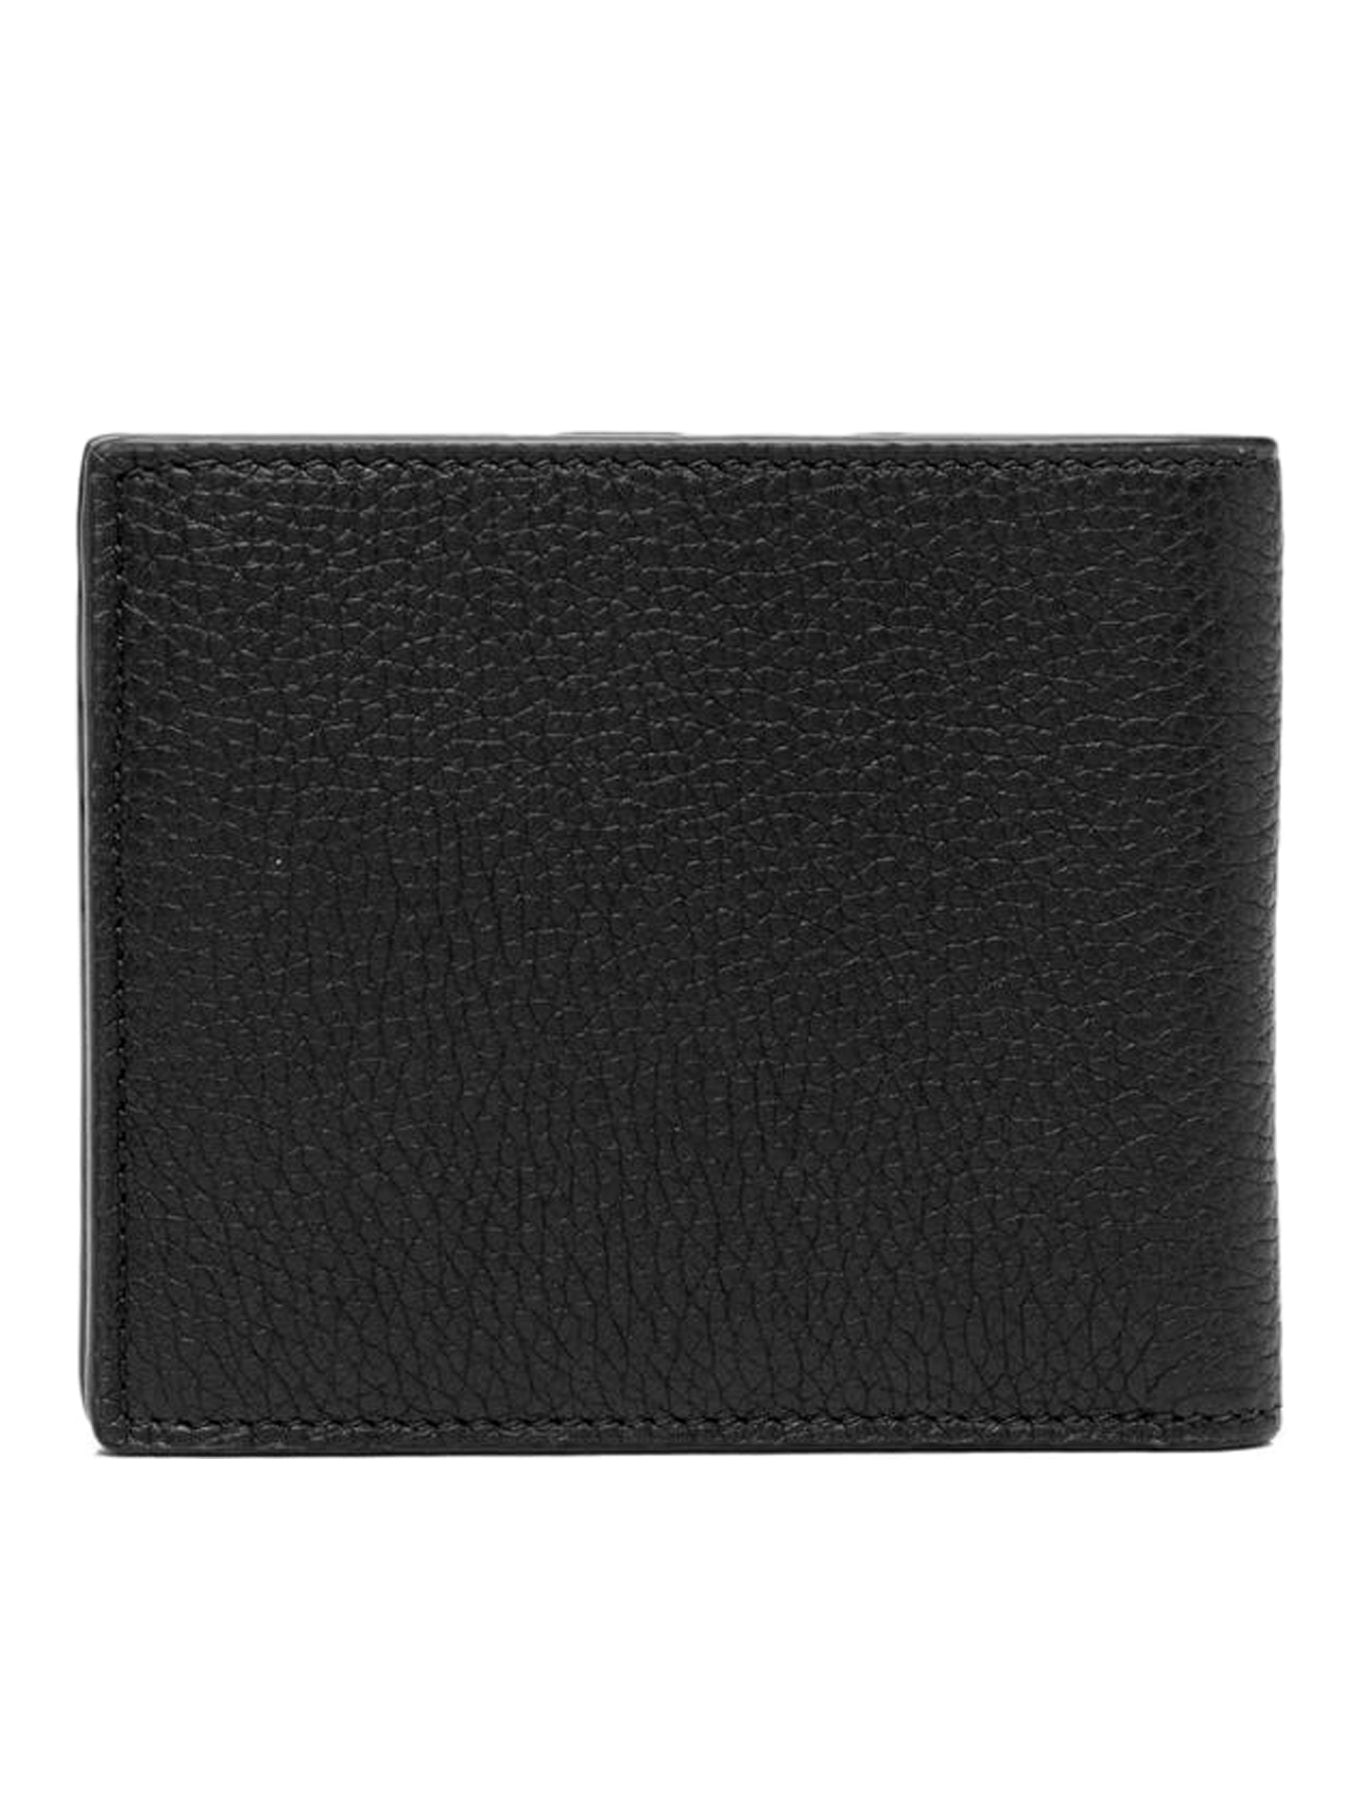 grained sheepskin wallet